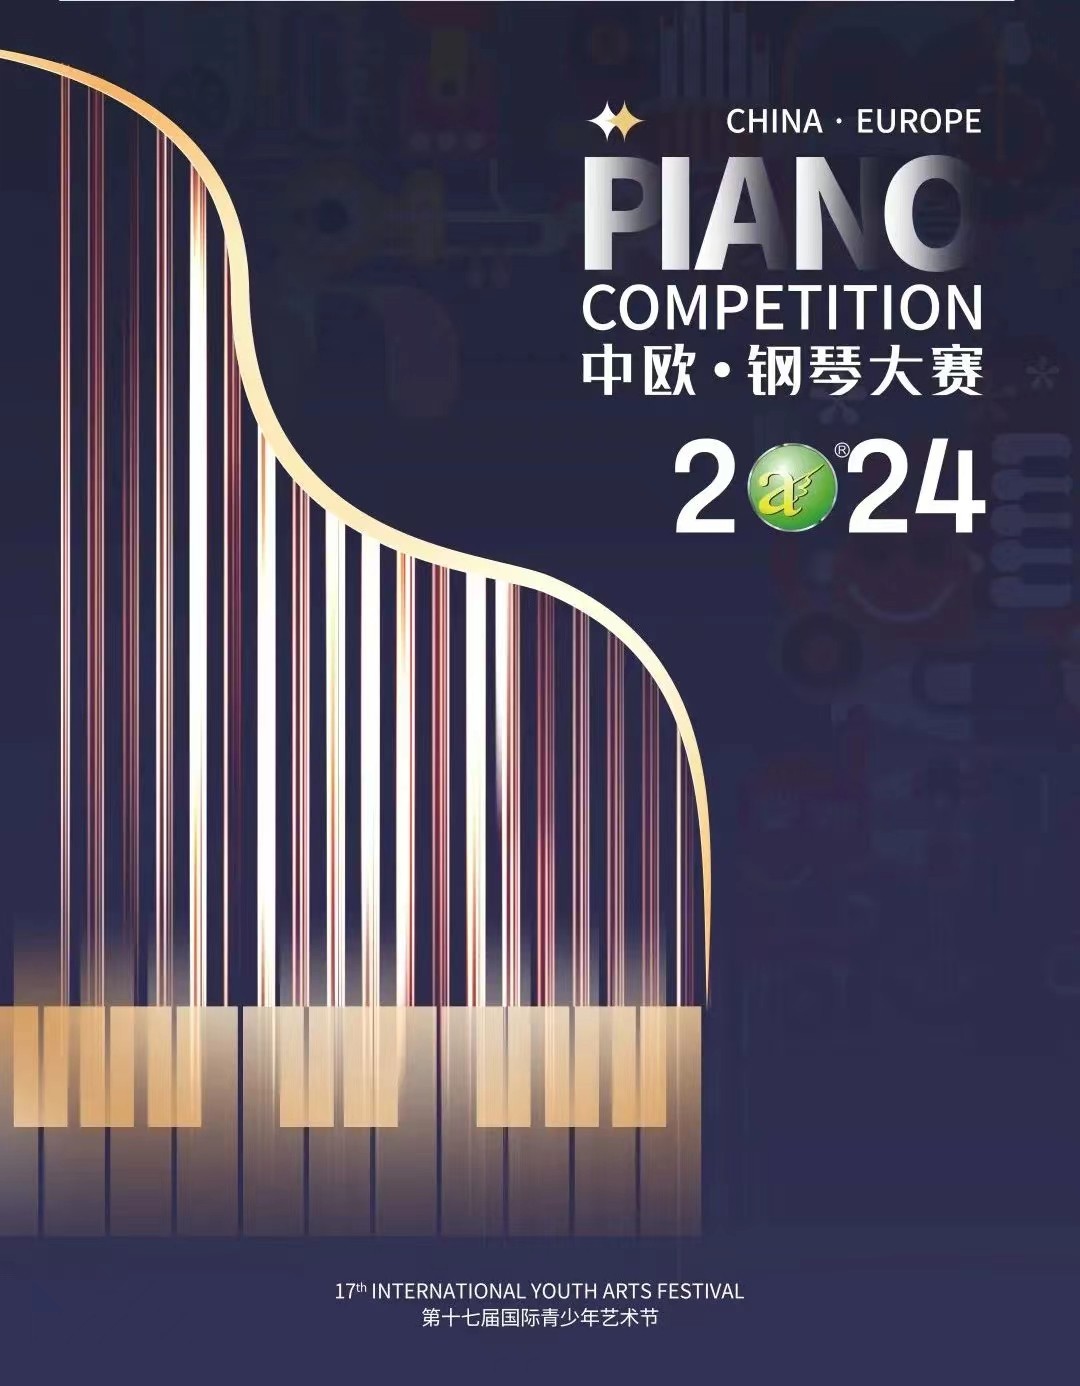 2024中欧·钢琴大赛暨第十七届国际青少年艺术节